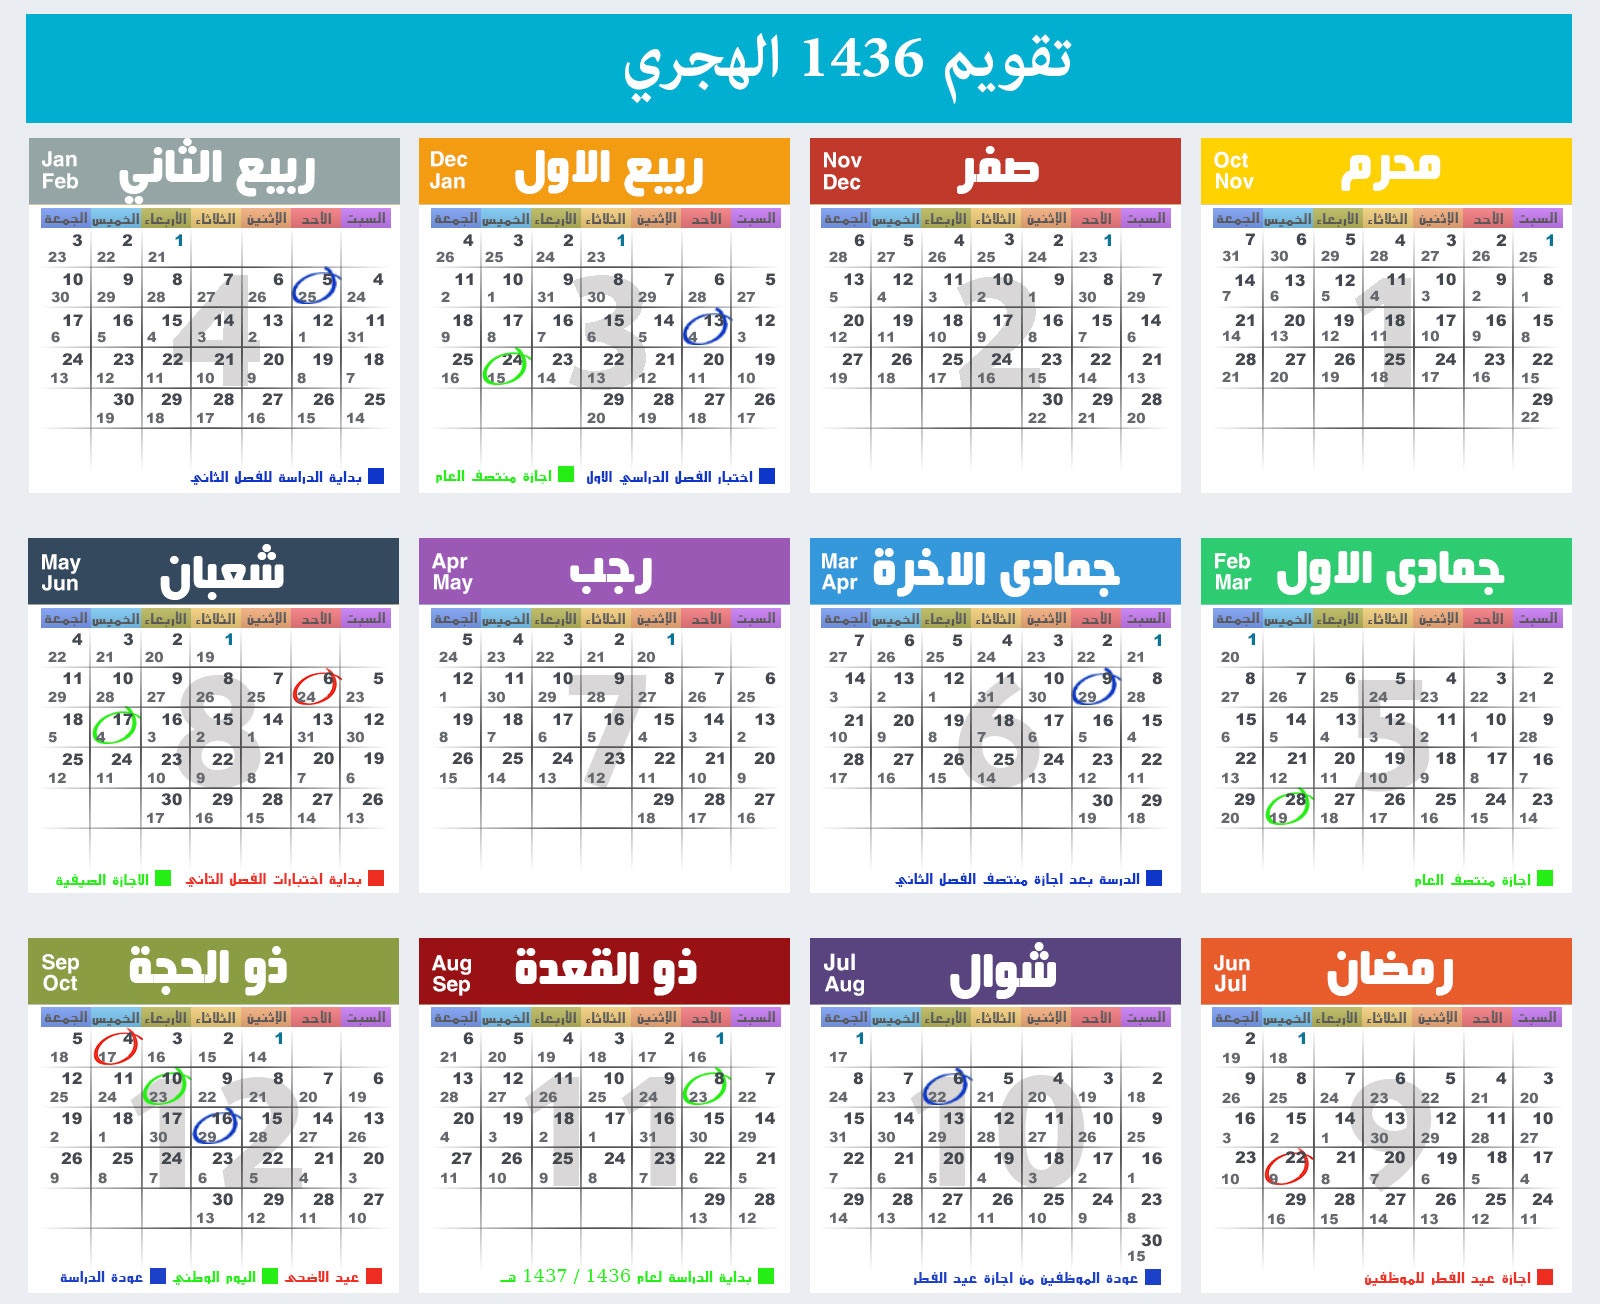 تحميل التقويم الميلادي والهجري للاندرويد Hijri Calendar 2015 1436